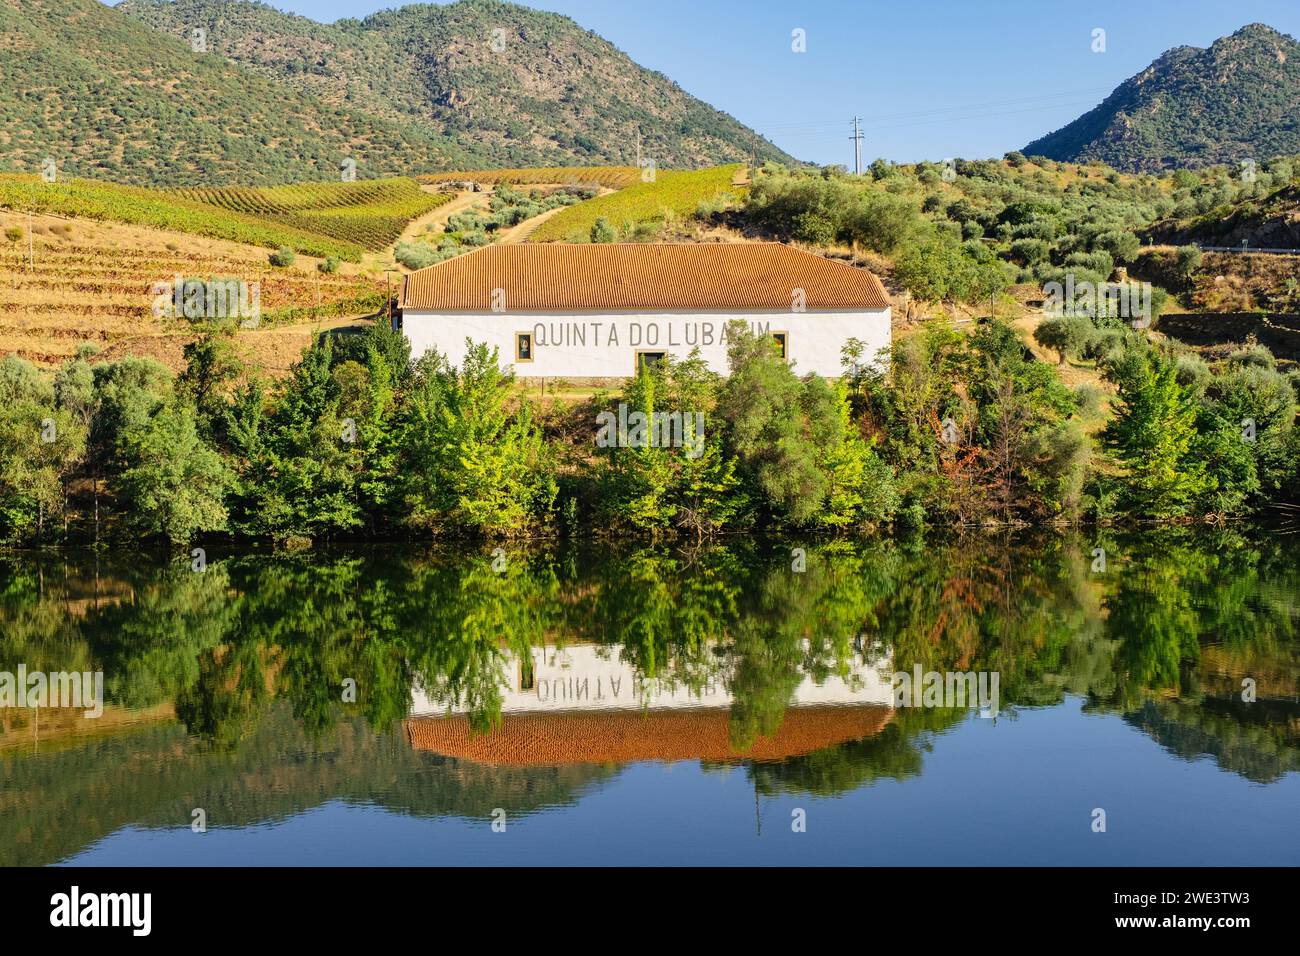 Quinta do Lubazim avec oliveraies et vignobles le long du fleuve Douro, Portugal, Europe. Banque D'Images